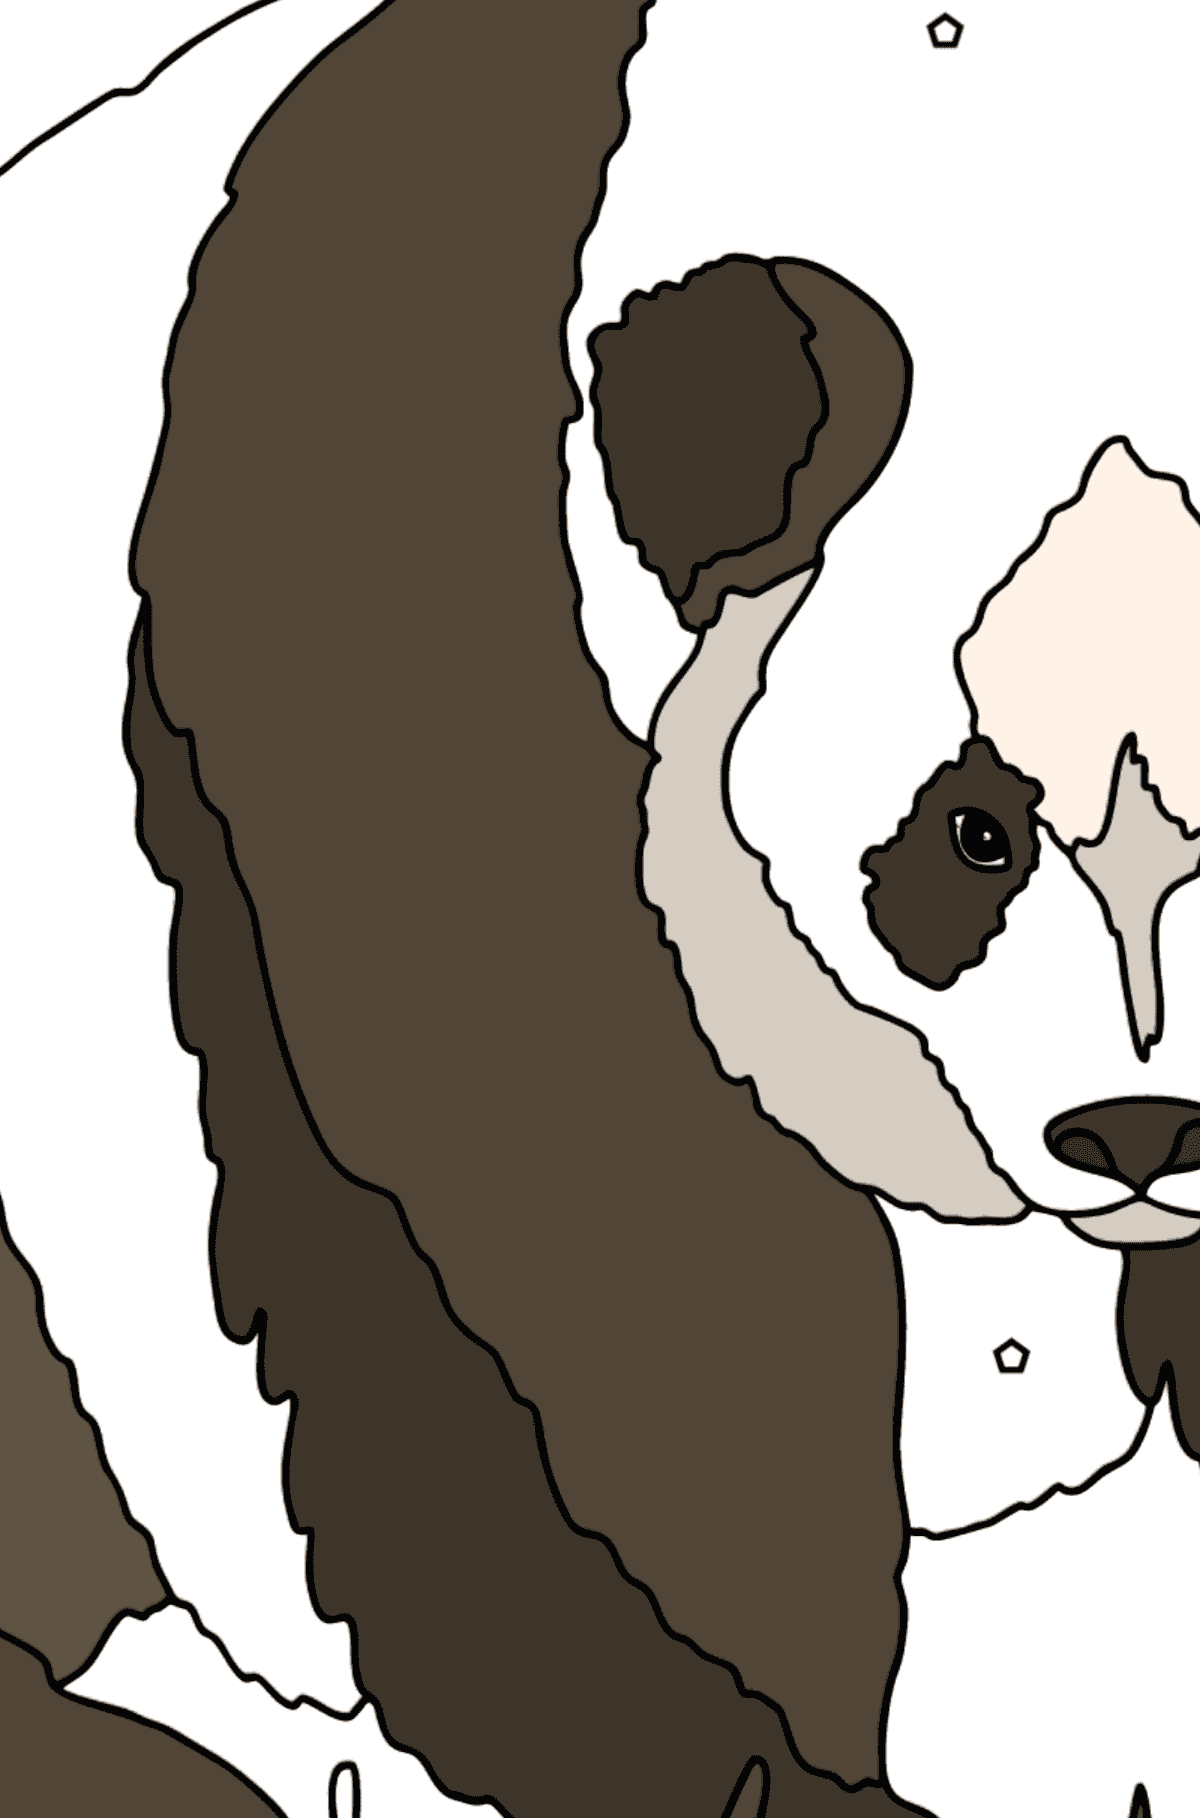 Słodka Kolorowanka Panda - Kolorowanie według symboli i figur geometrycznych dla dzieci